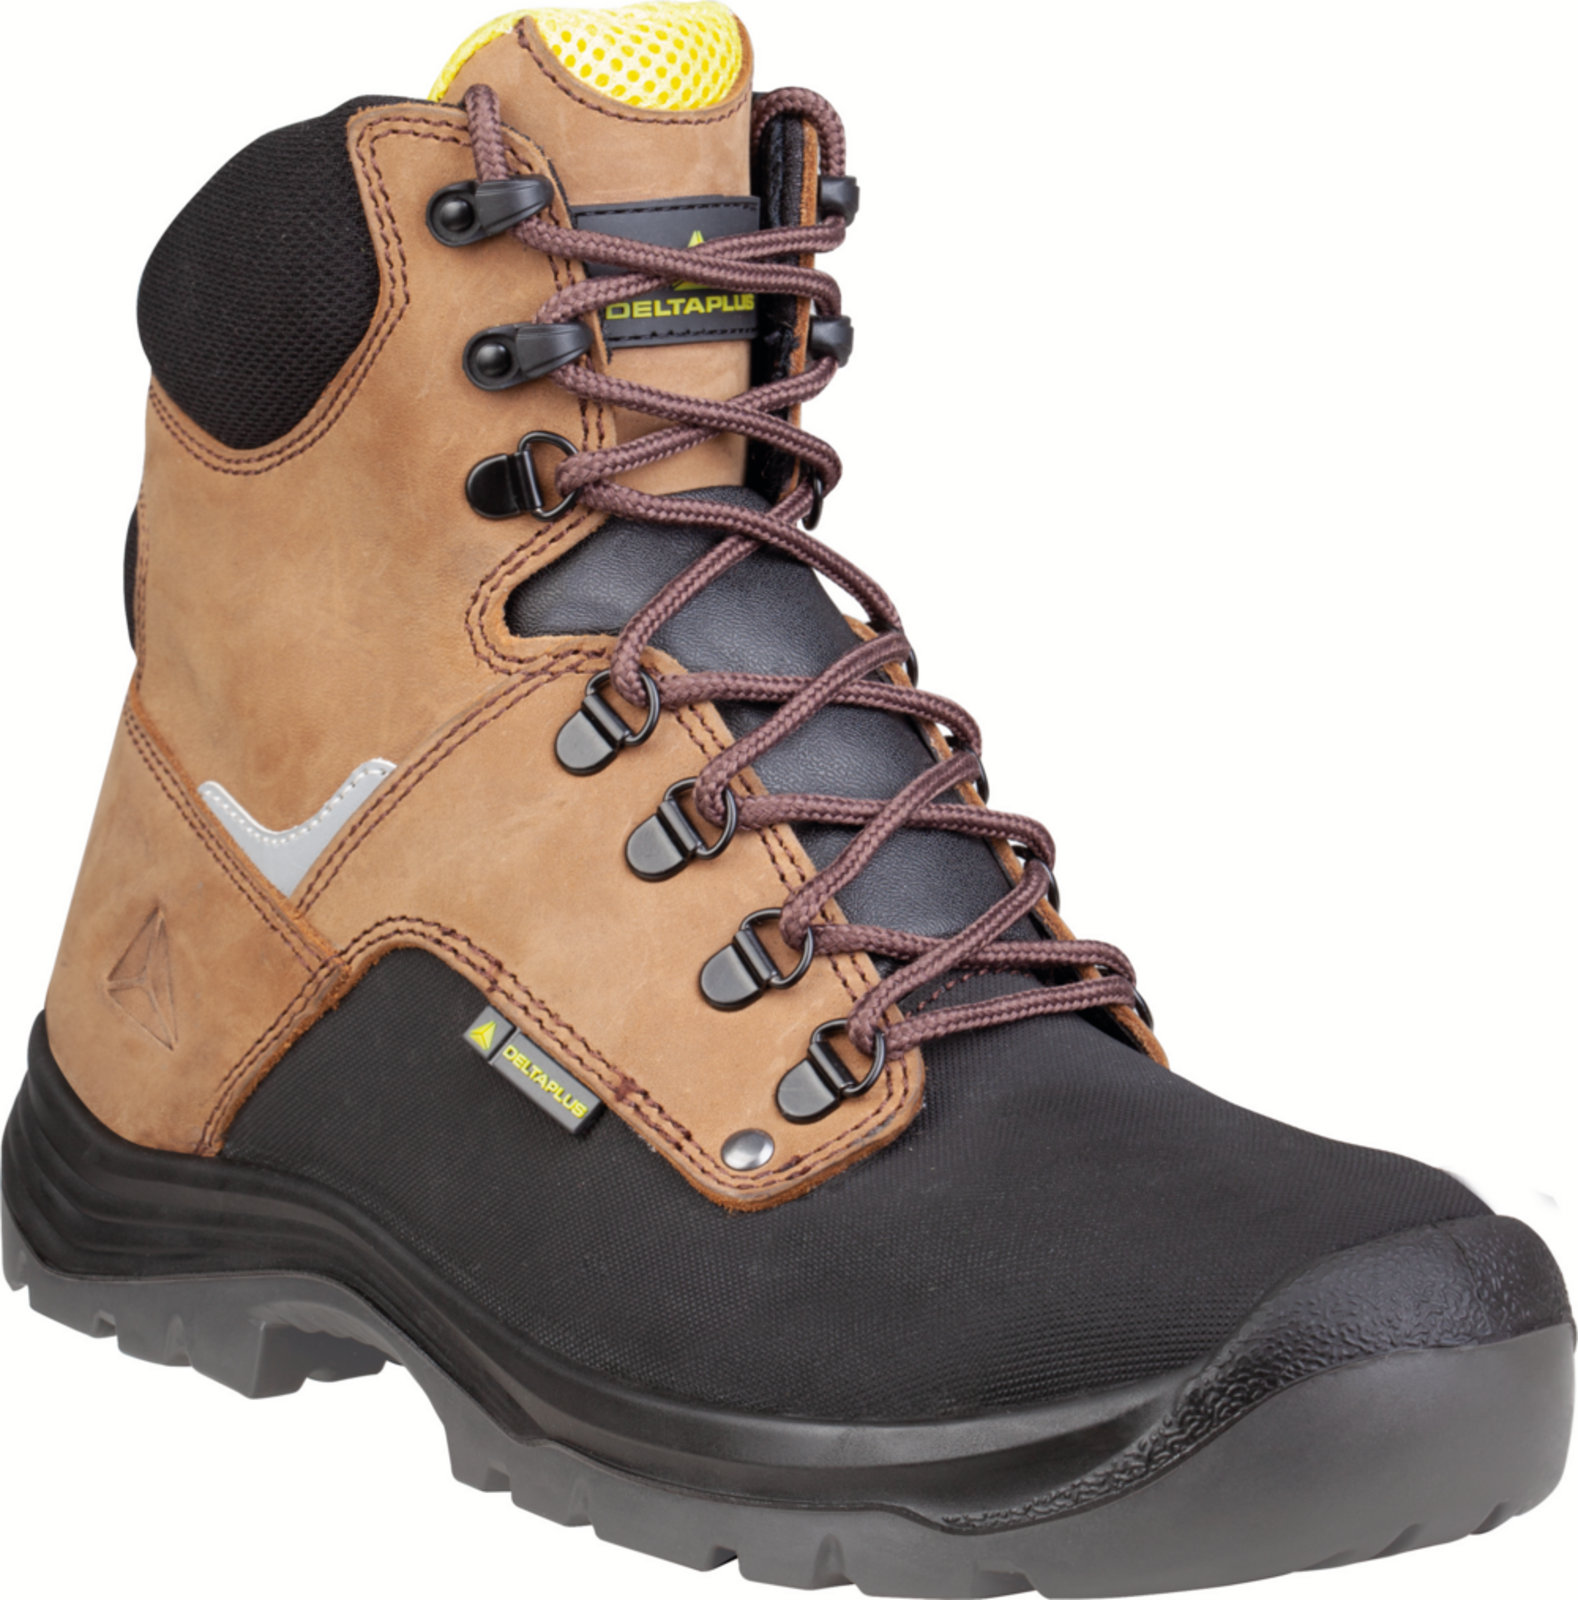 Vysoká bezpečnostná obuv Delta Plus Atacama S3 - veľkosť: 36, farba: hnedá/čierna